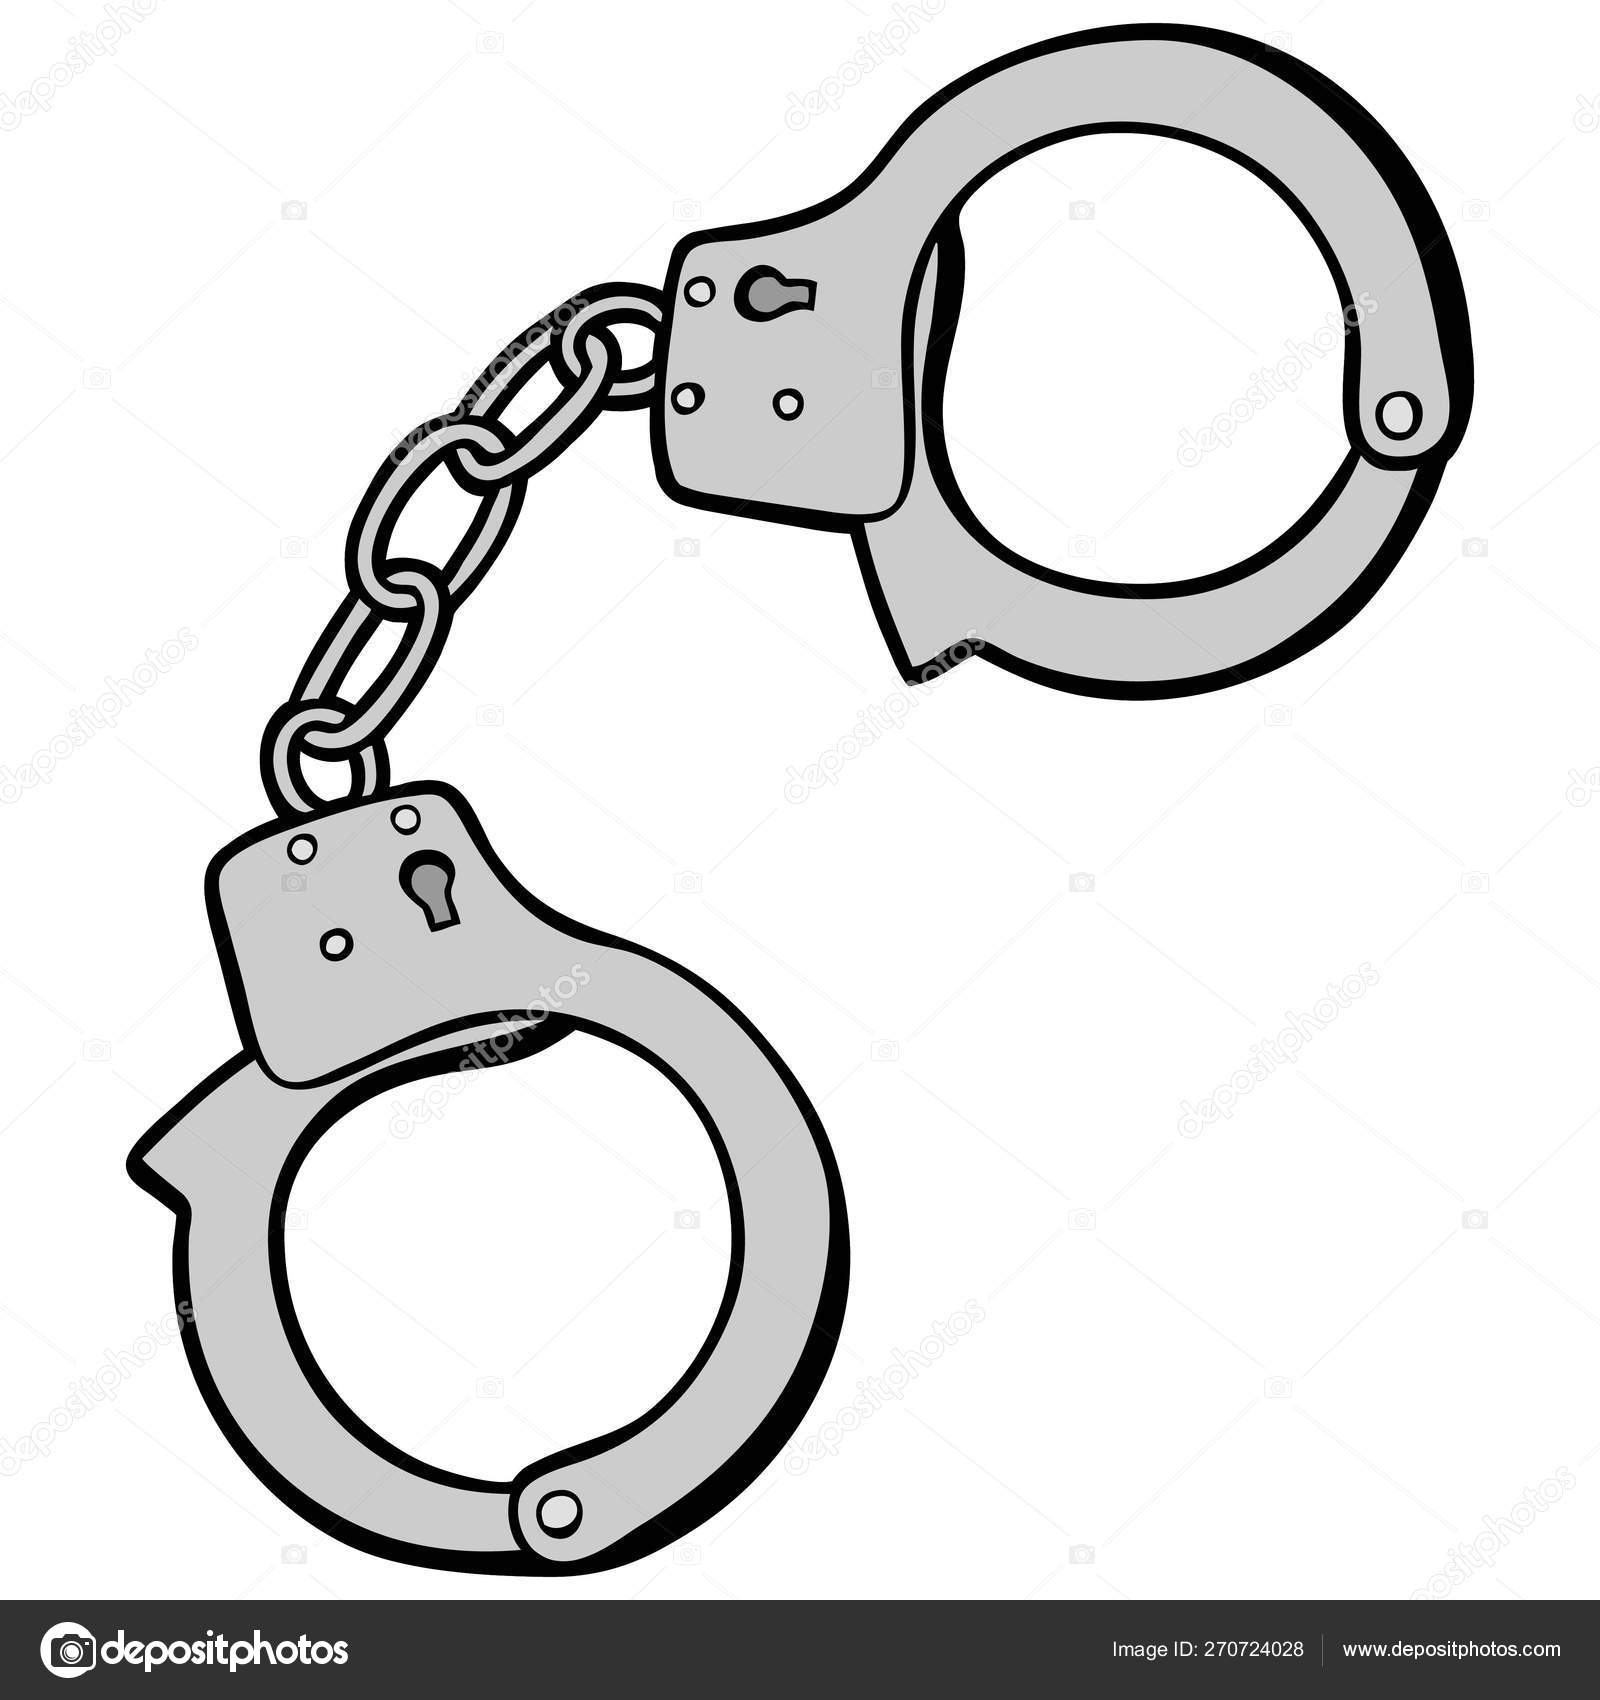 handcuffs cartoon